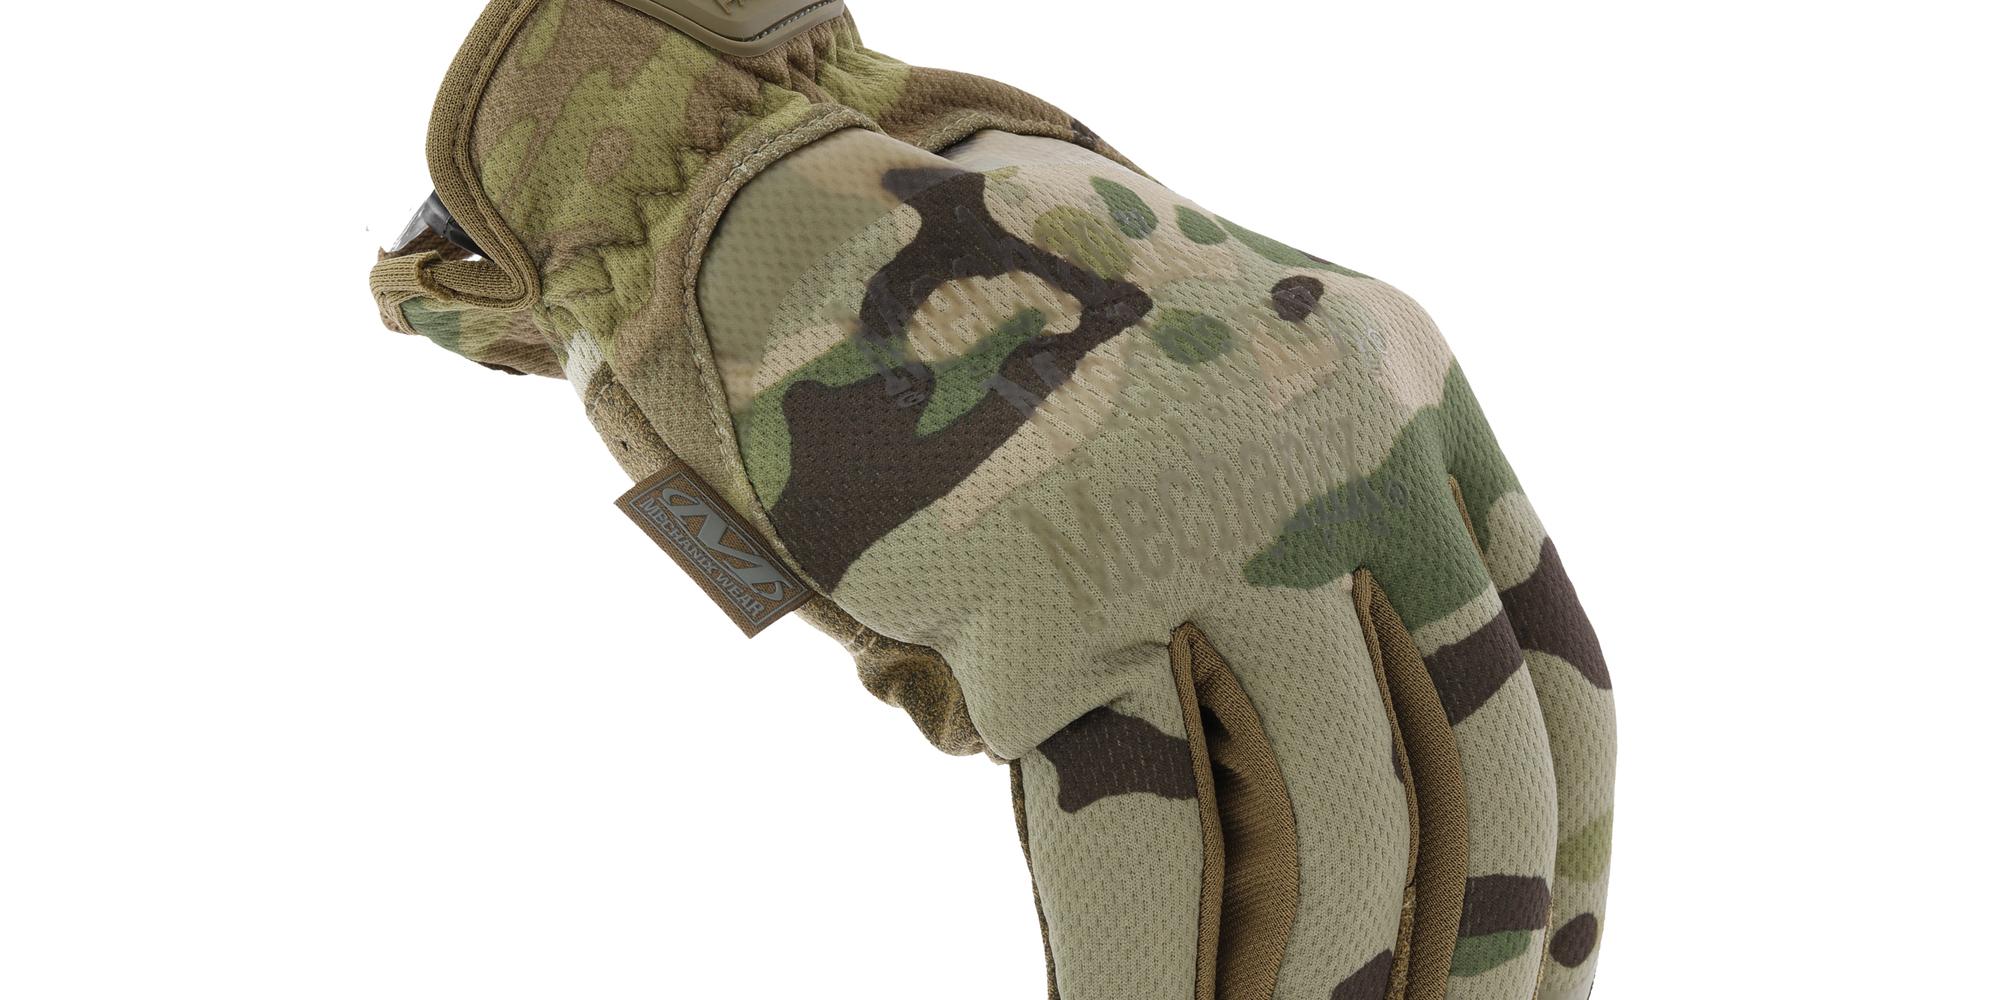 MECHANIX Zimné rukavice Tactical FastFit - MultiCam M/9